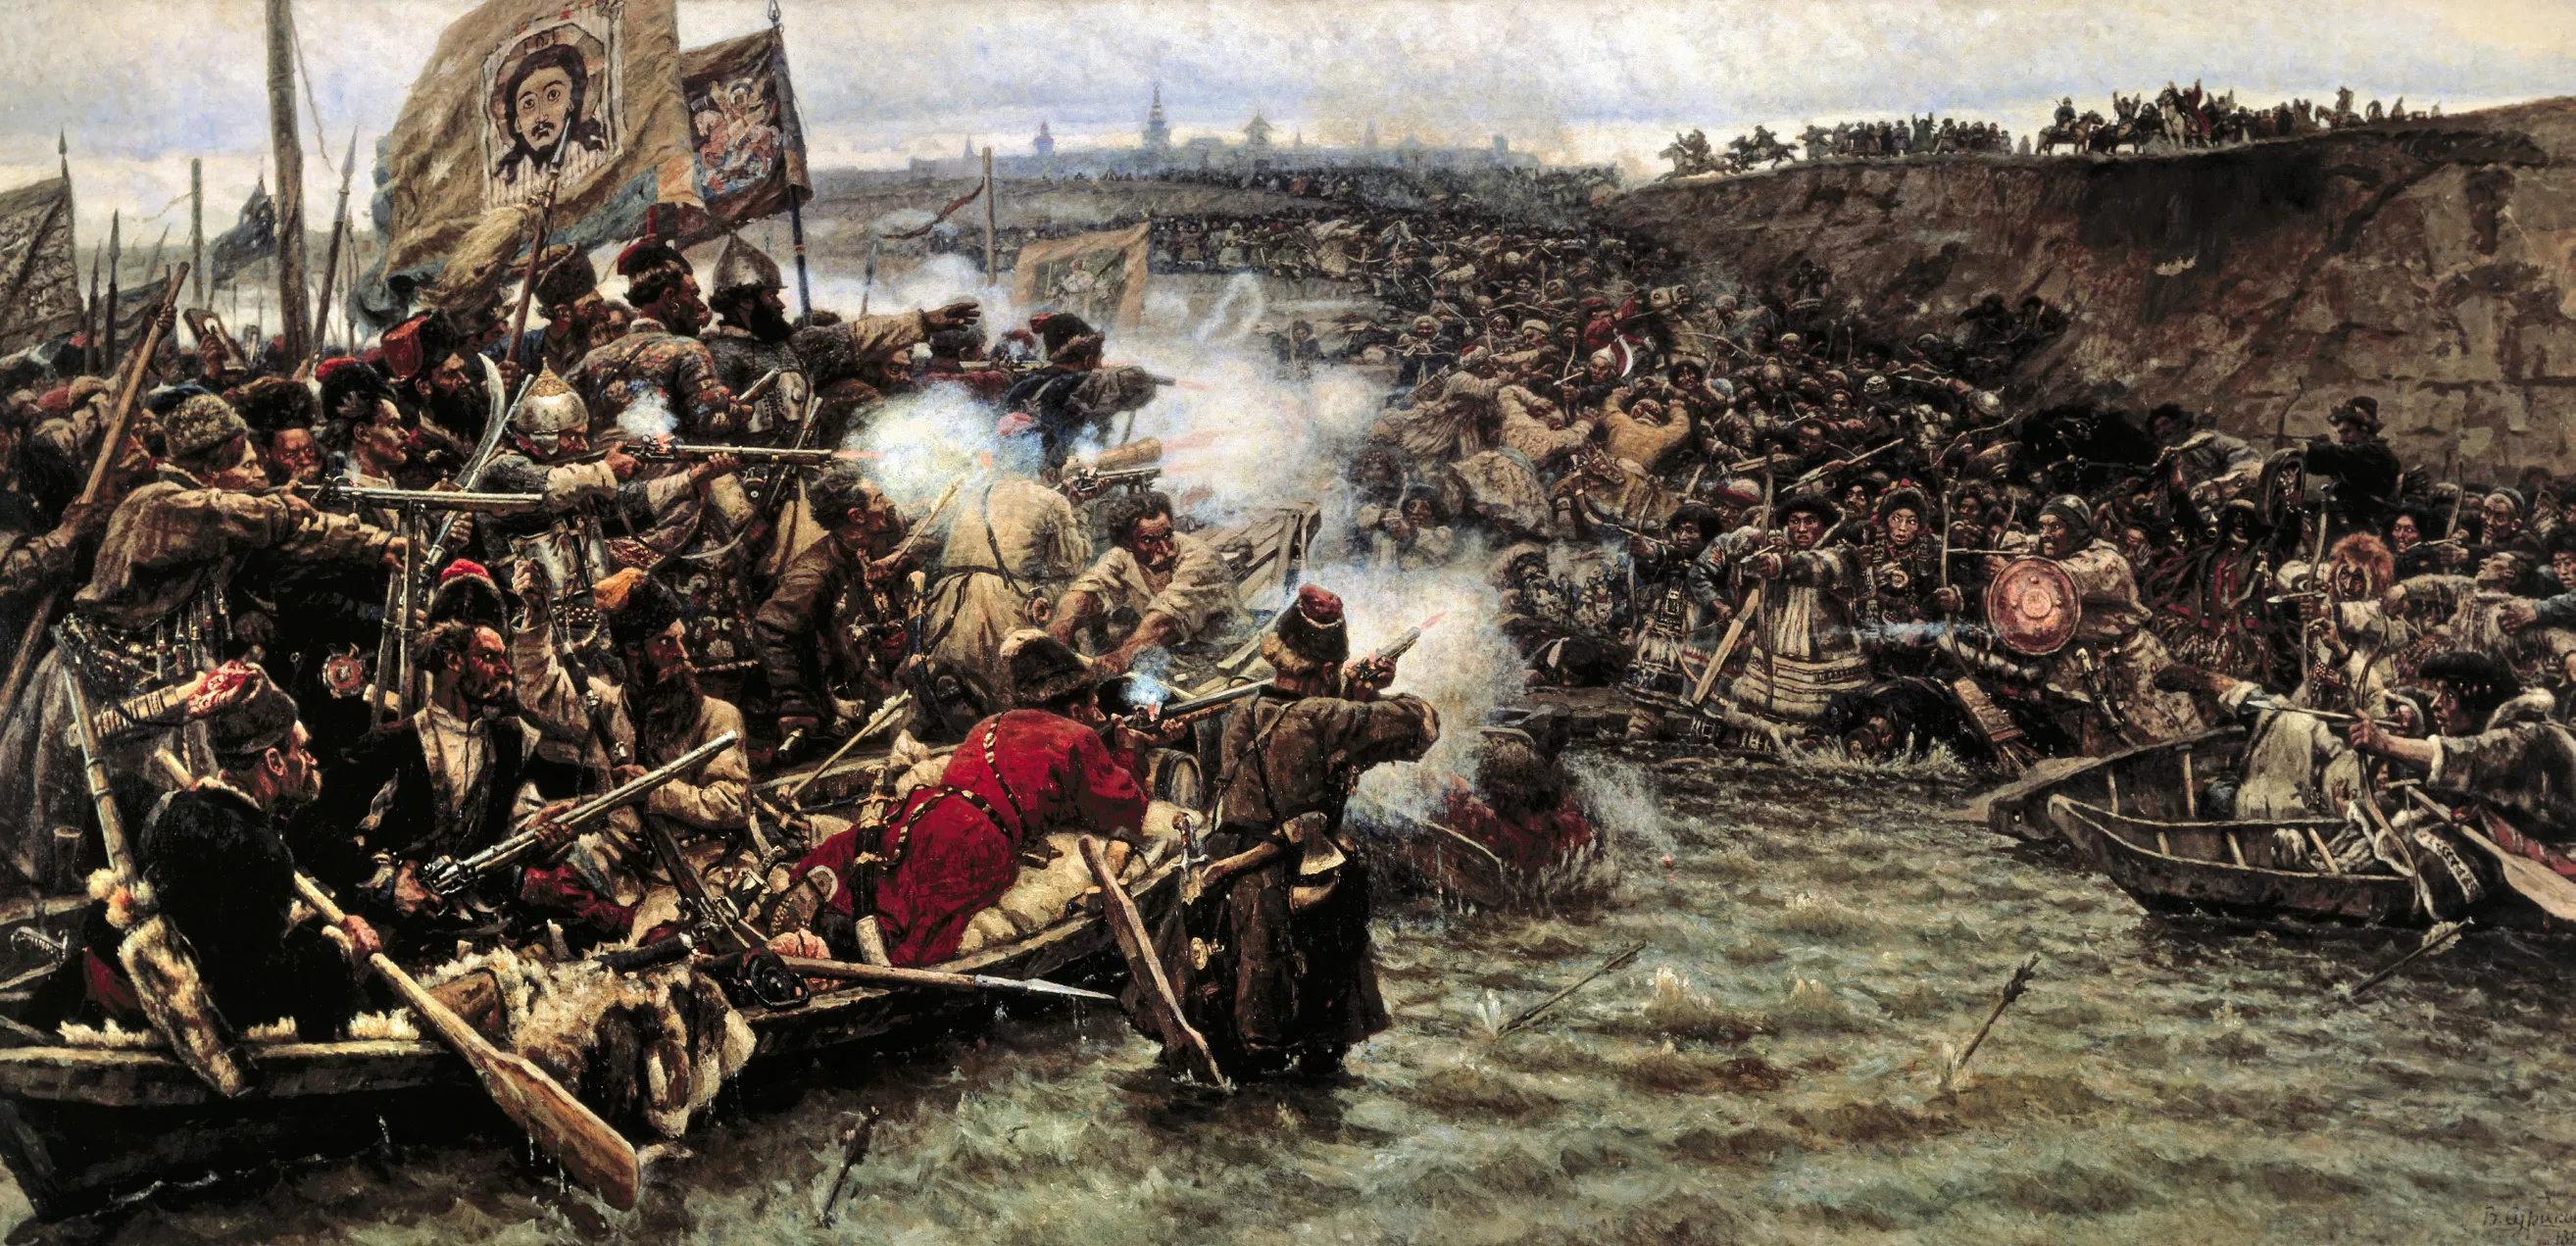 L’exèrcit del temut Iermak Timofèievitx al riu Irtysh al 1582, als inicis de l’expansió russa per les terres siberianes